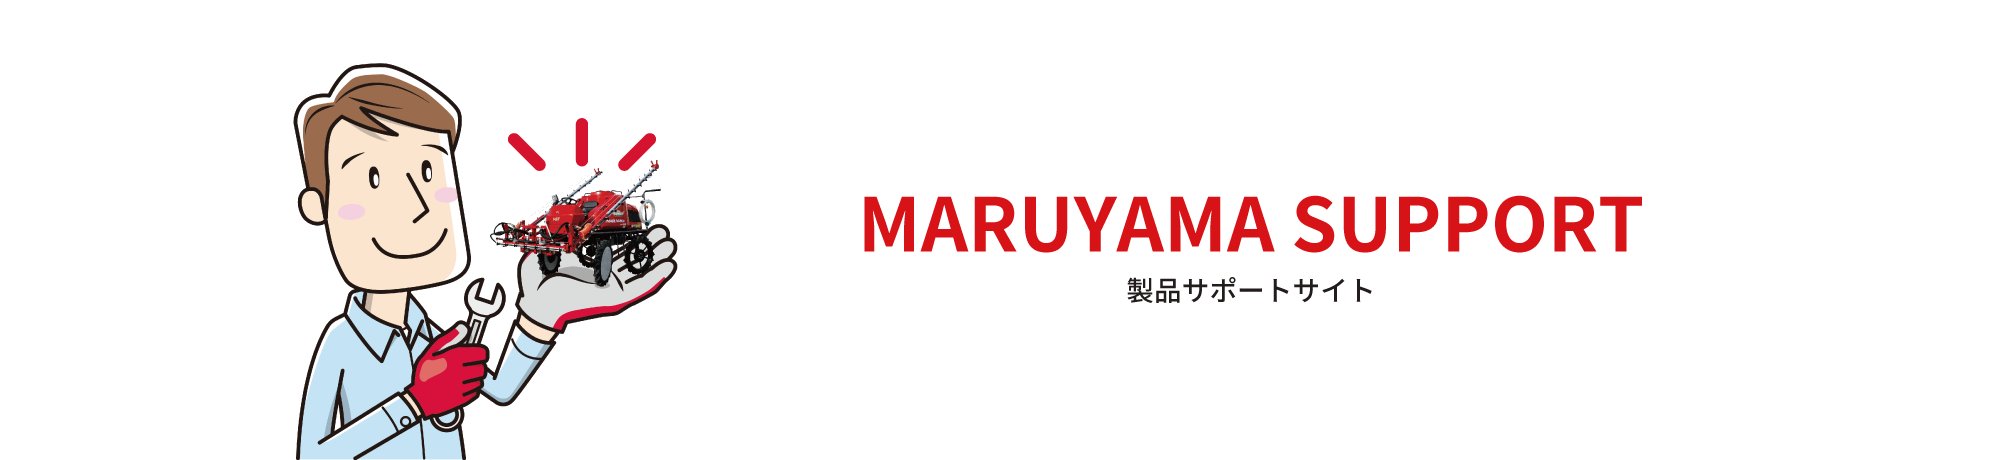 MARUYAMサポートサイト